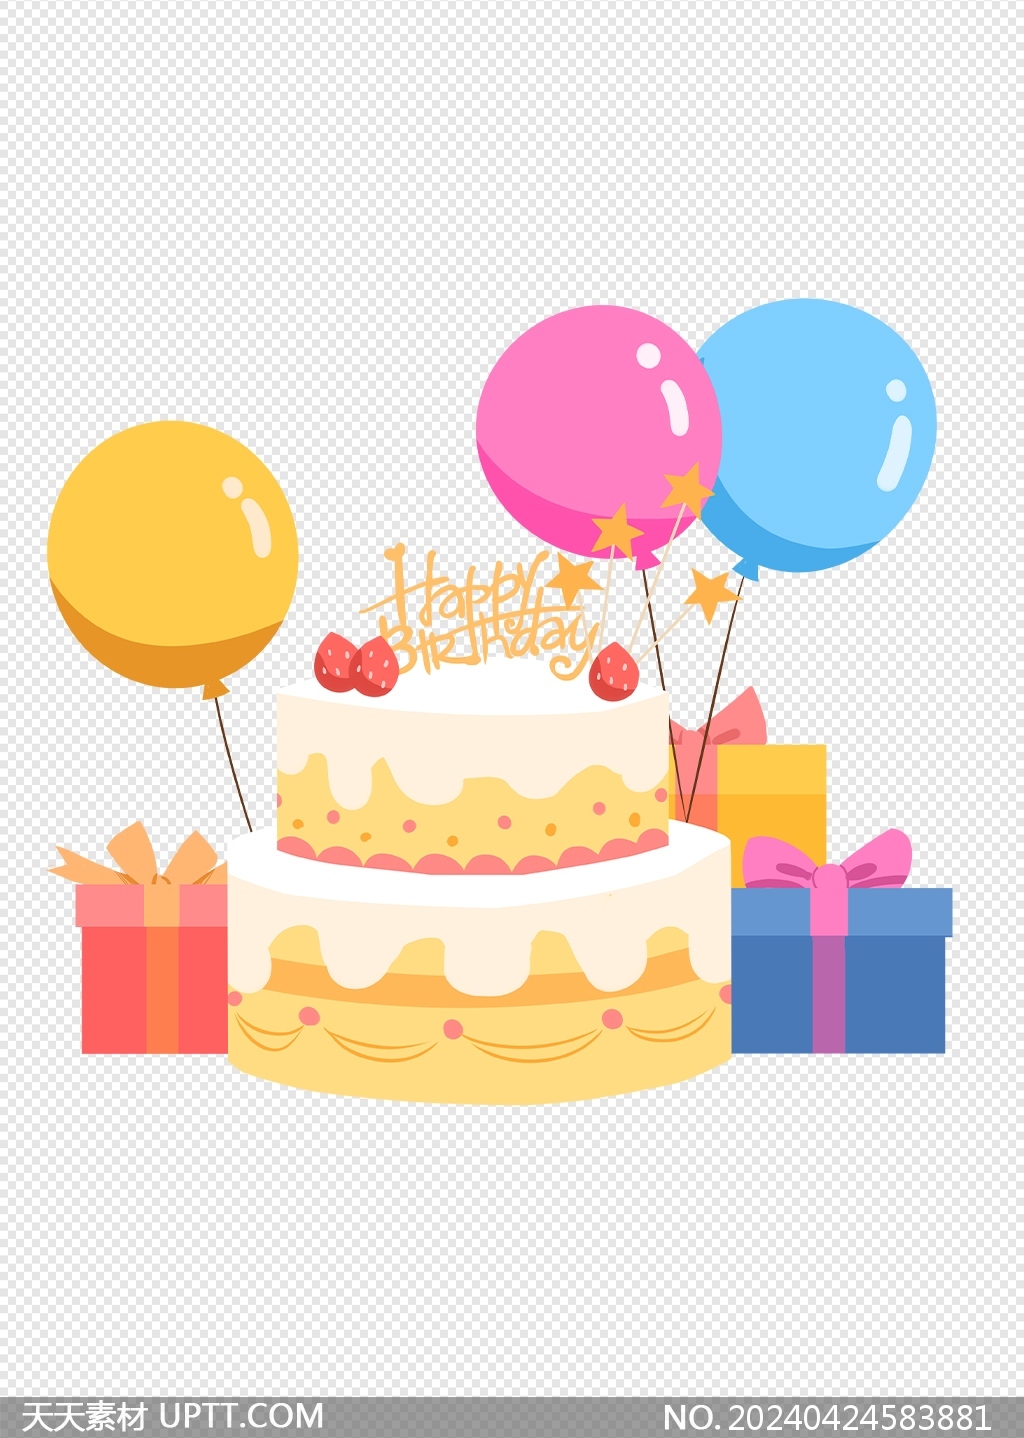 可爱气球生日礼物生日蛋糕生日元素png素材